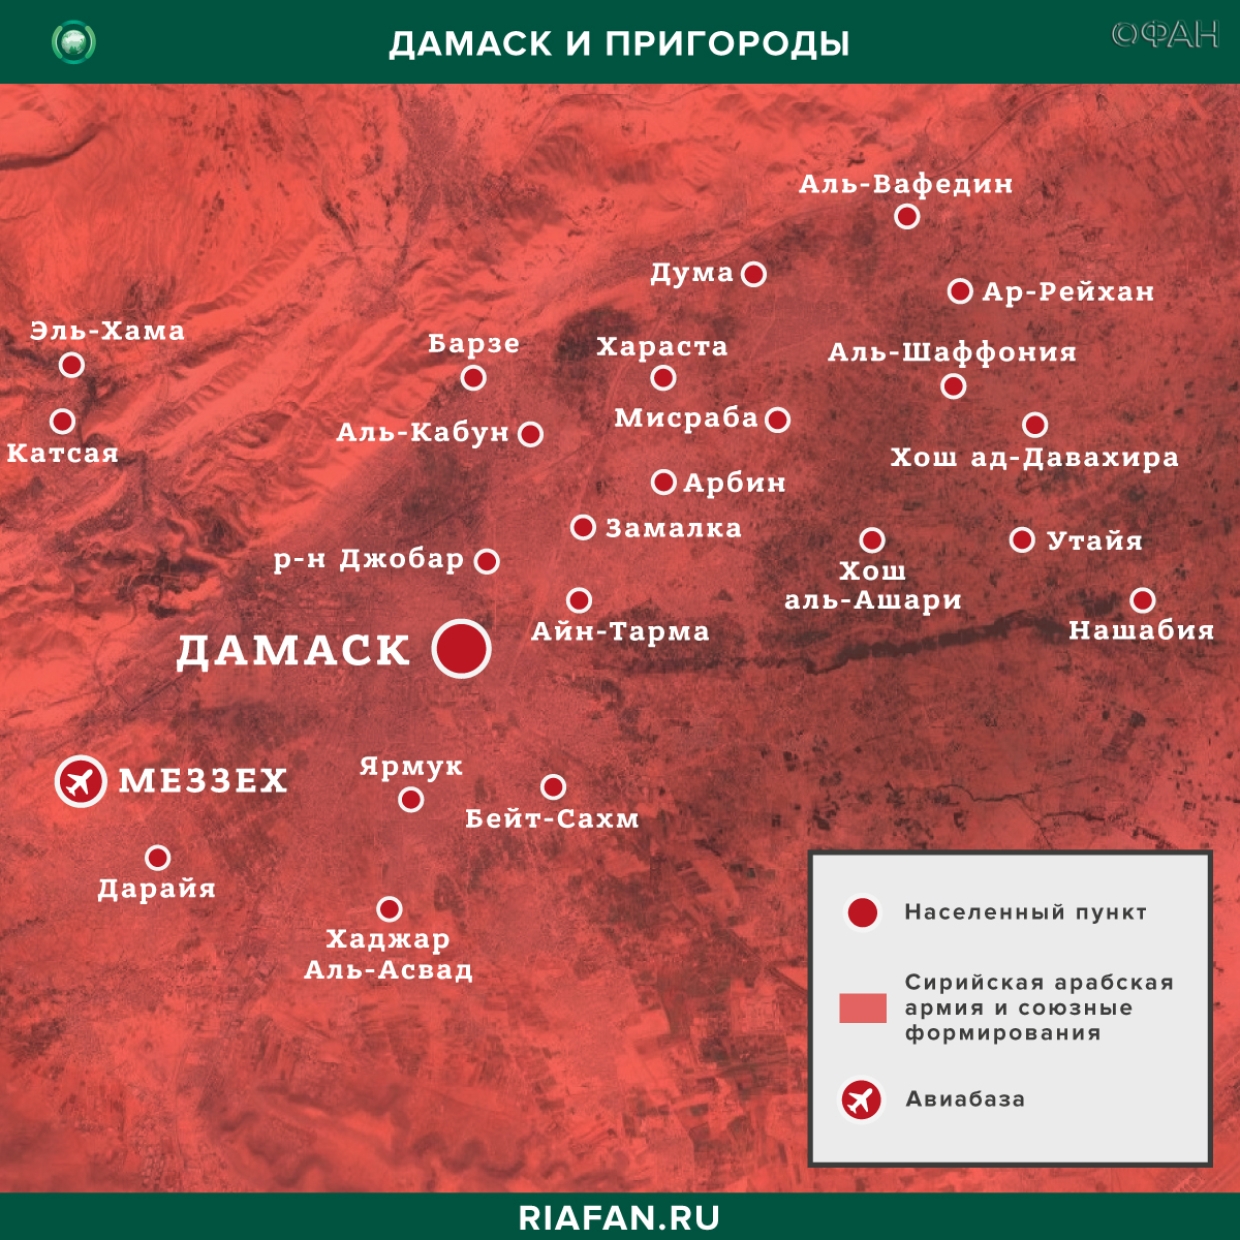 Syrie résultats quotidiens pour 27 Février 06.00: взрыв в Дамаске, сирийская армия освободила свыше 30 поселений Идлиба